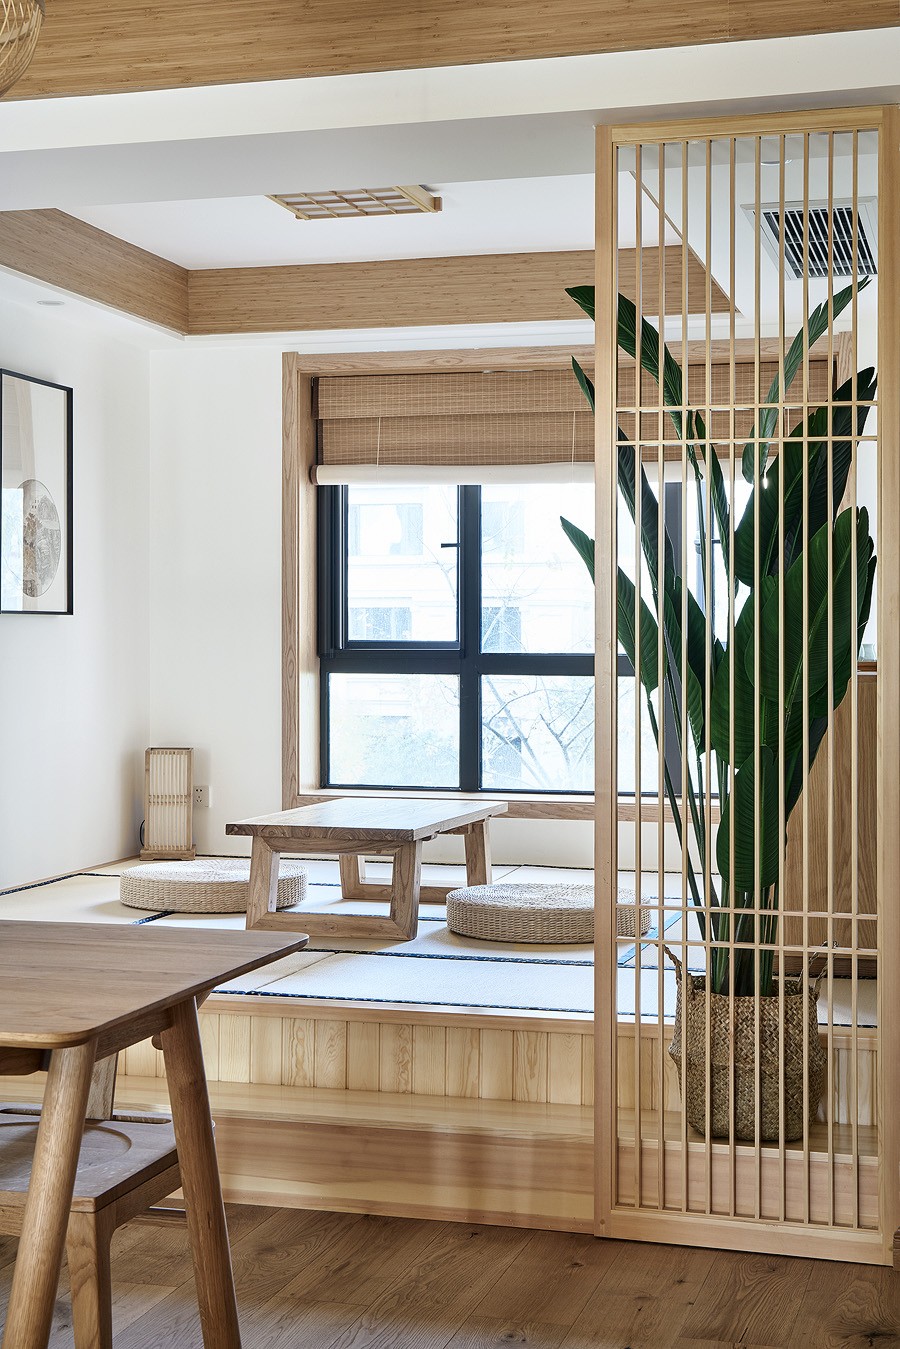 日式原木風格家裝設計室內裝修效果圖-榻榻米